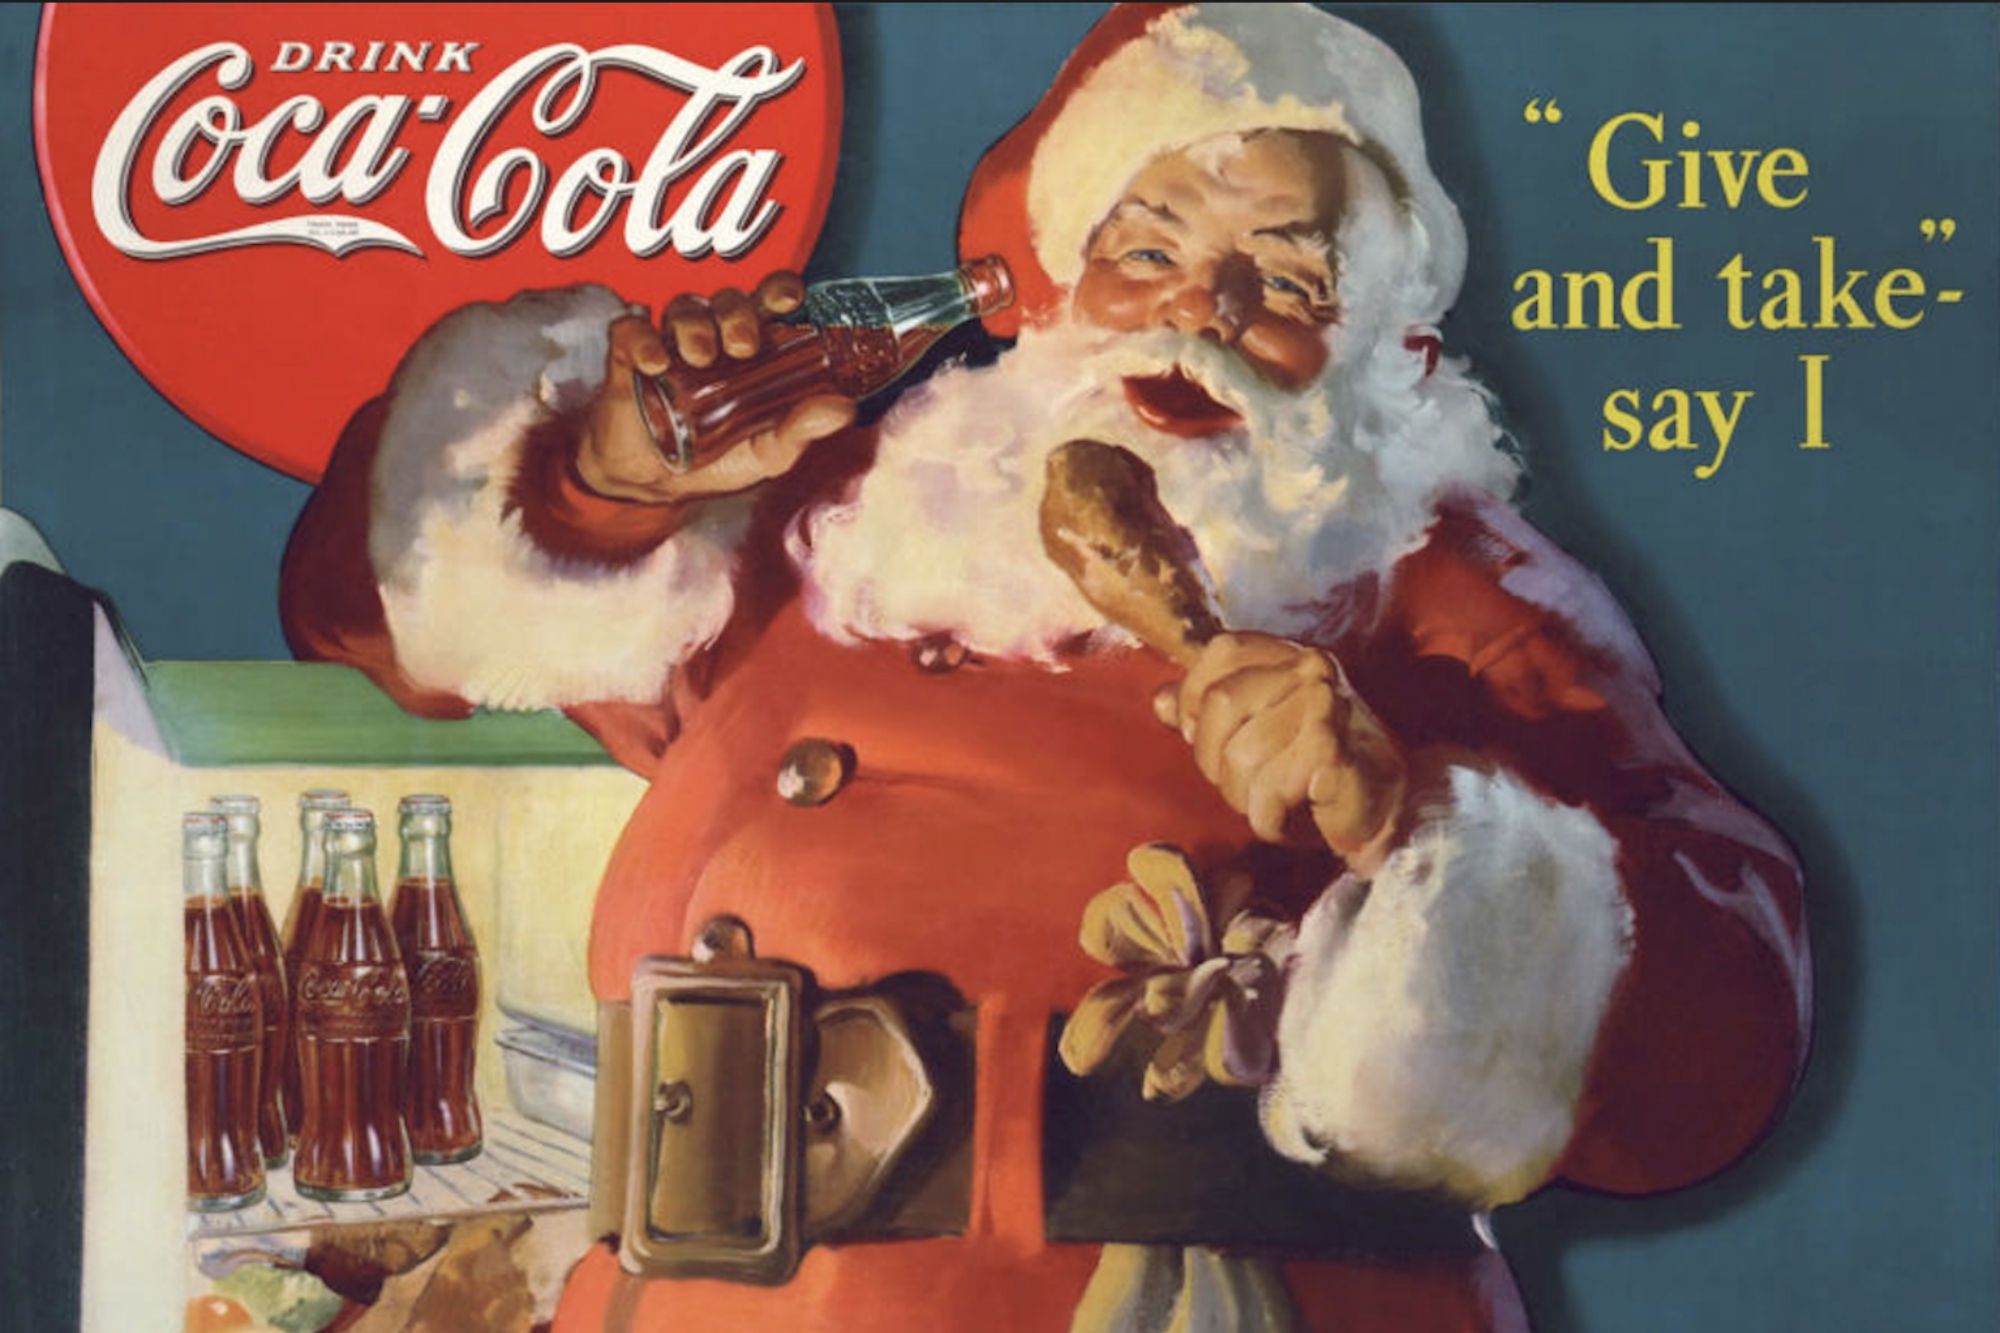 is - Cola 'invented' Santa Claus